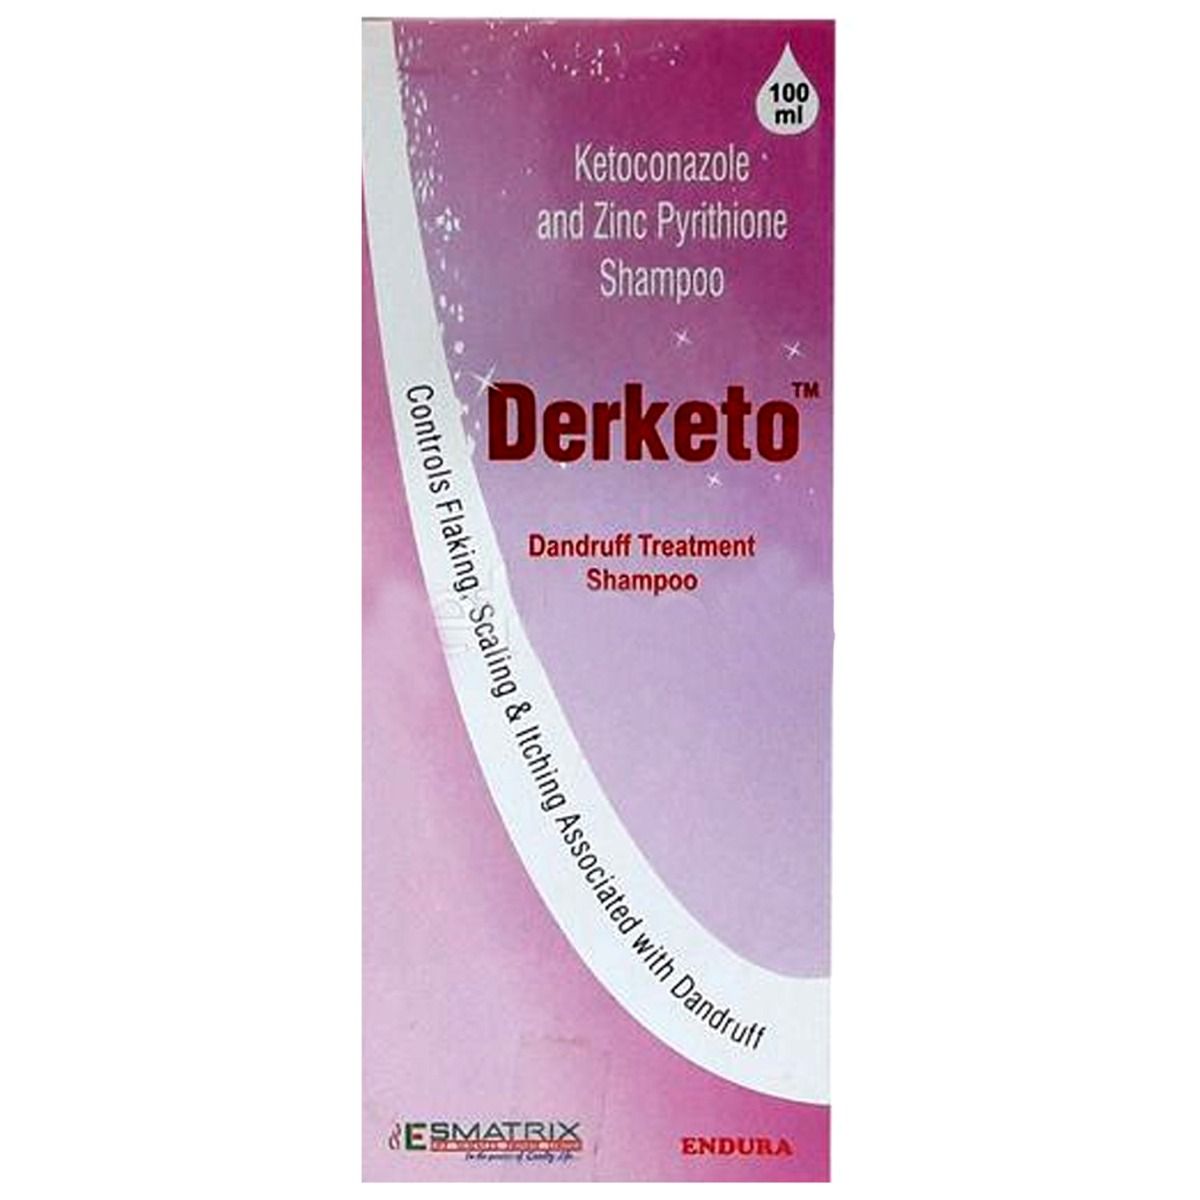 Derketo Dandruff Treatment Shampoo, 100 ml, Pack of 1 